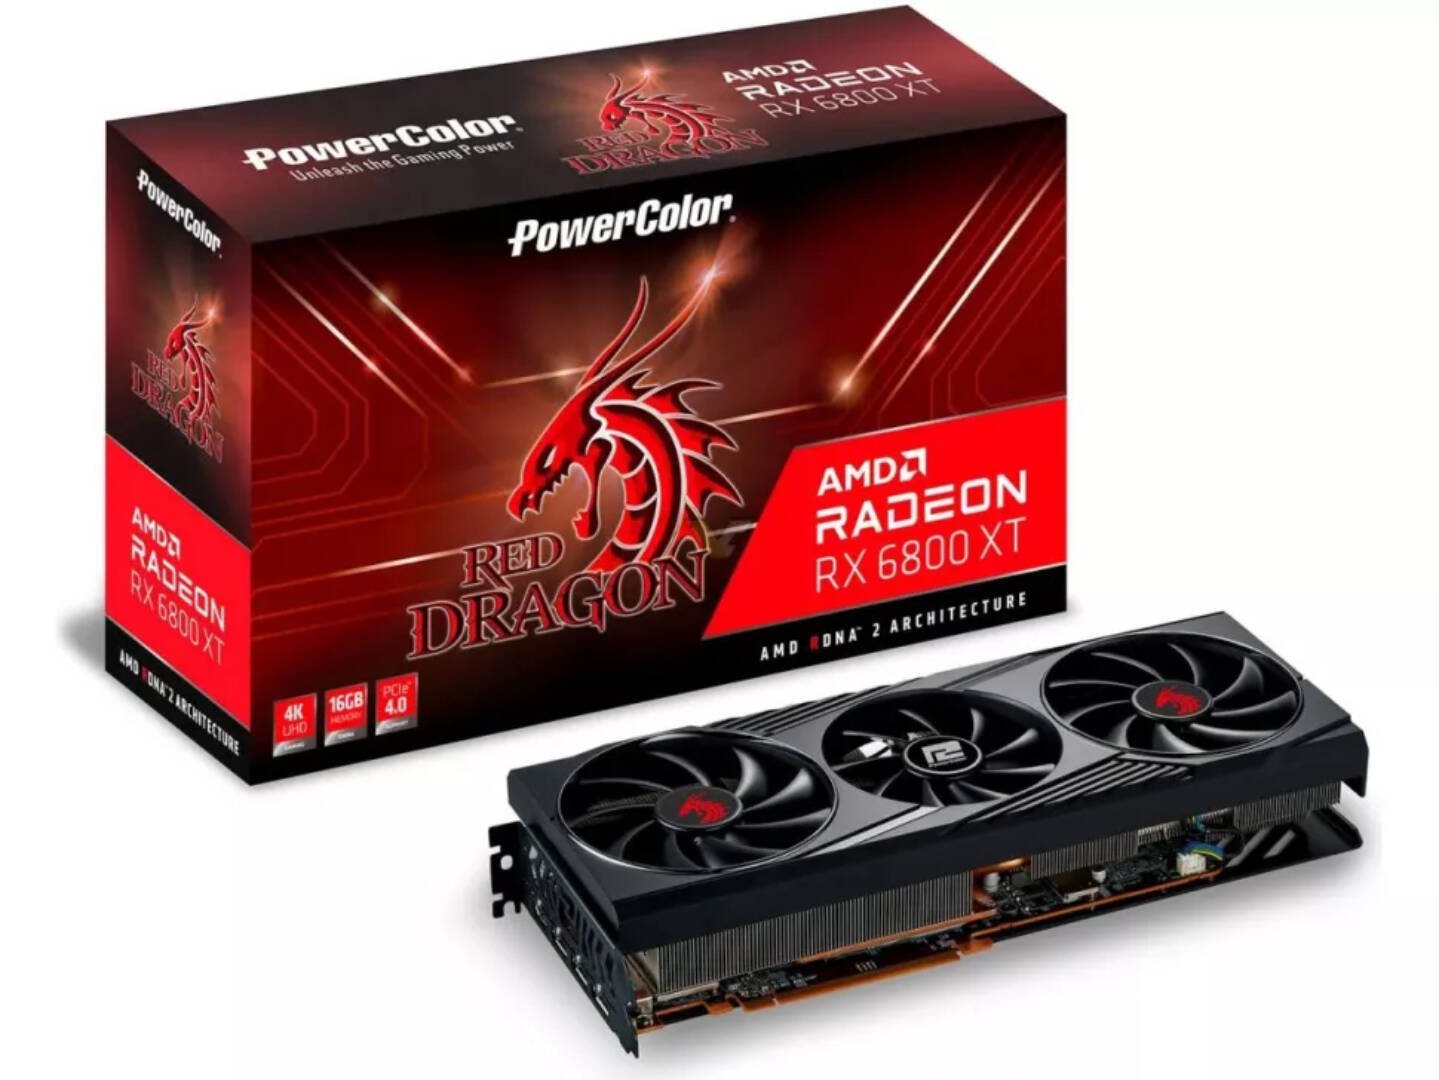 Immagine di PowerColor, il drago rosso si risveglia con le nuove Radeon RX 6800